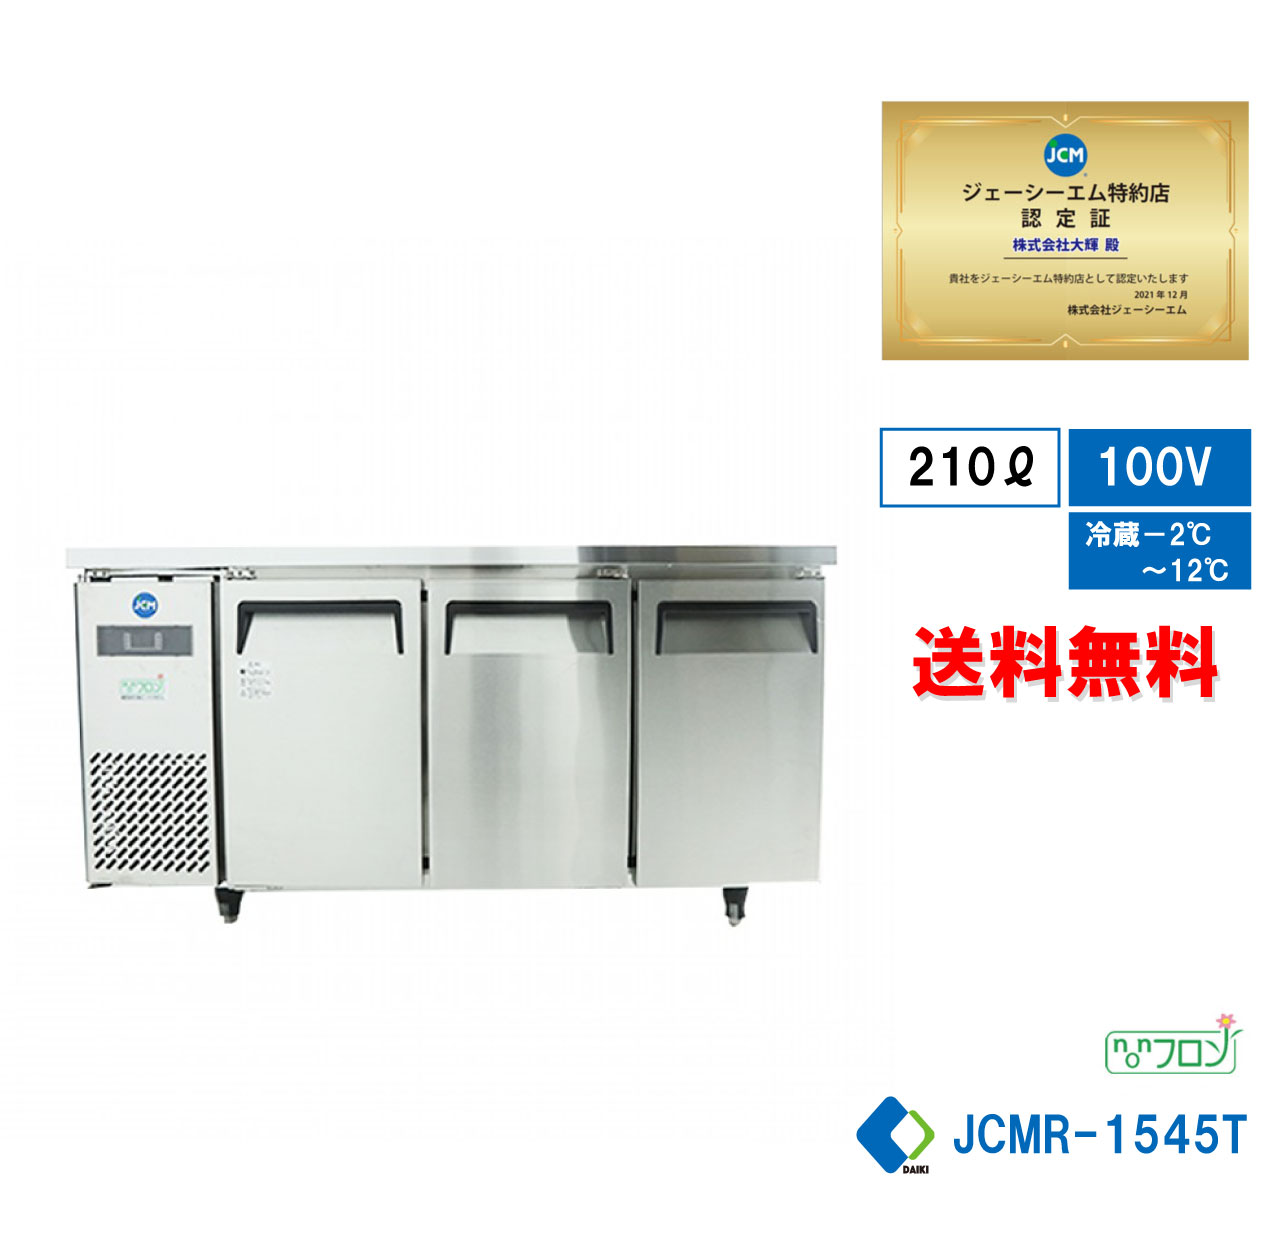  業務用 JCM ヨコ型冷蔵庫 産業用冷蔵庫 薄型 ヨコ型 台下 冷蔵庫 コールドテーブル 省エネ